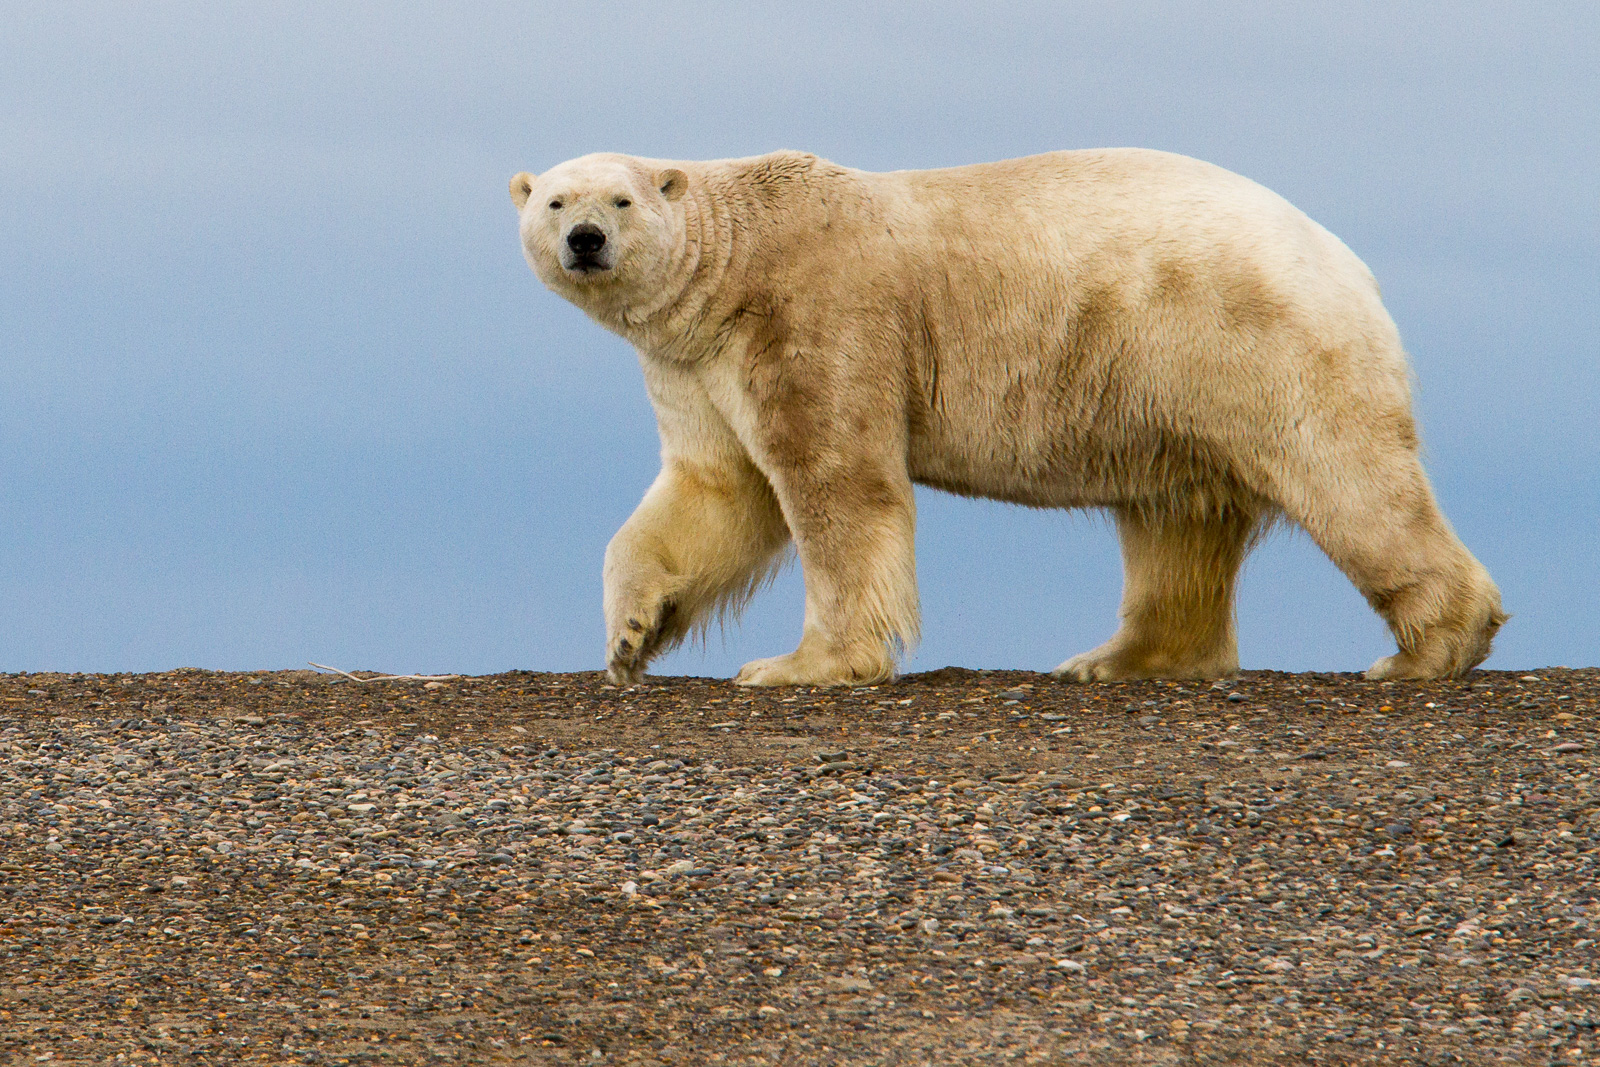 Polar bear on an island in the Beaufort Sea